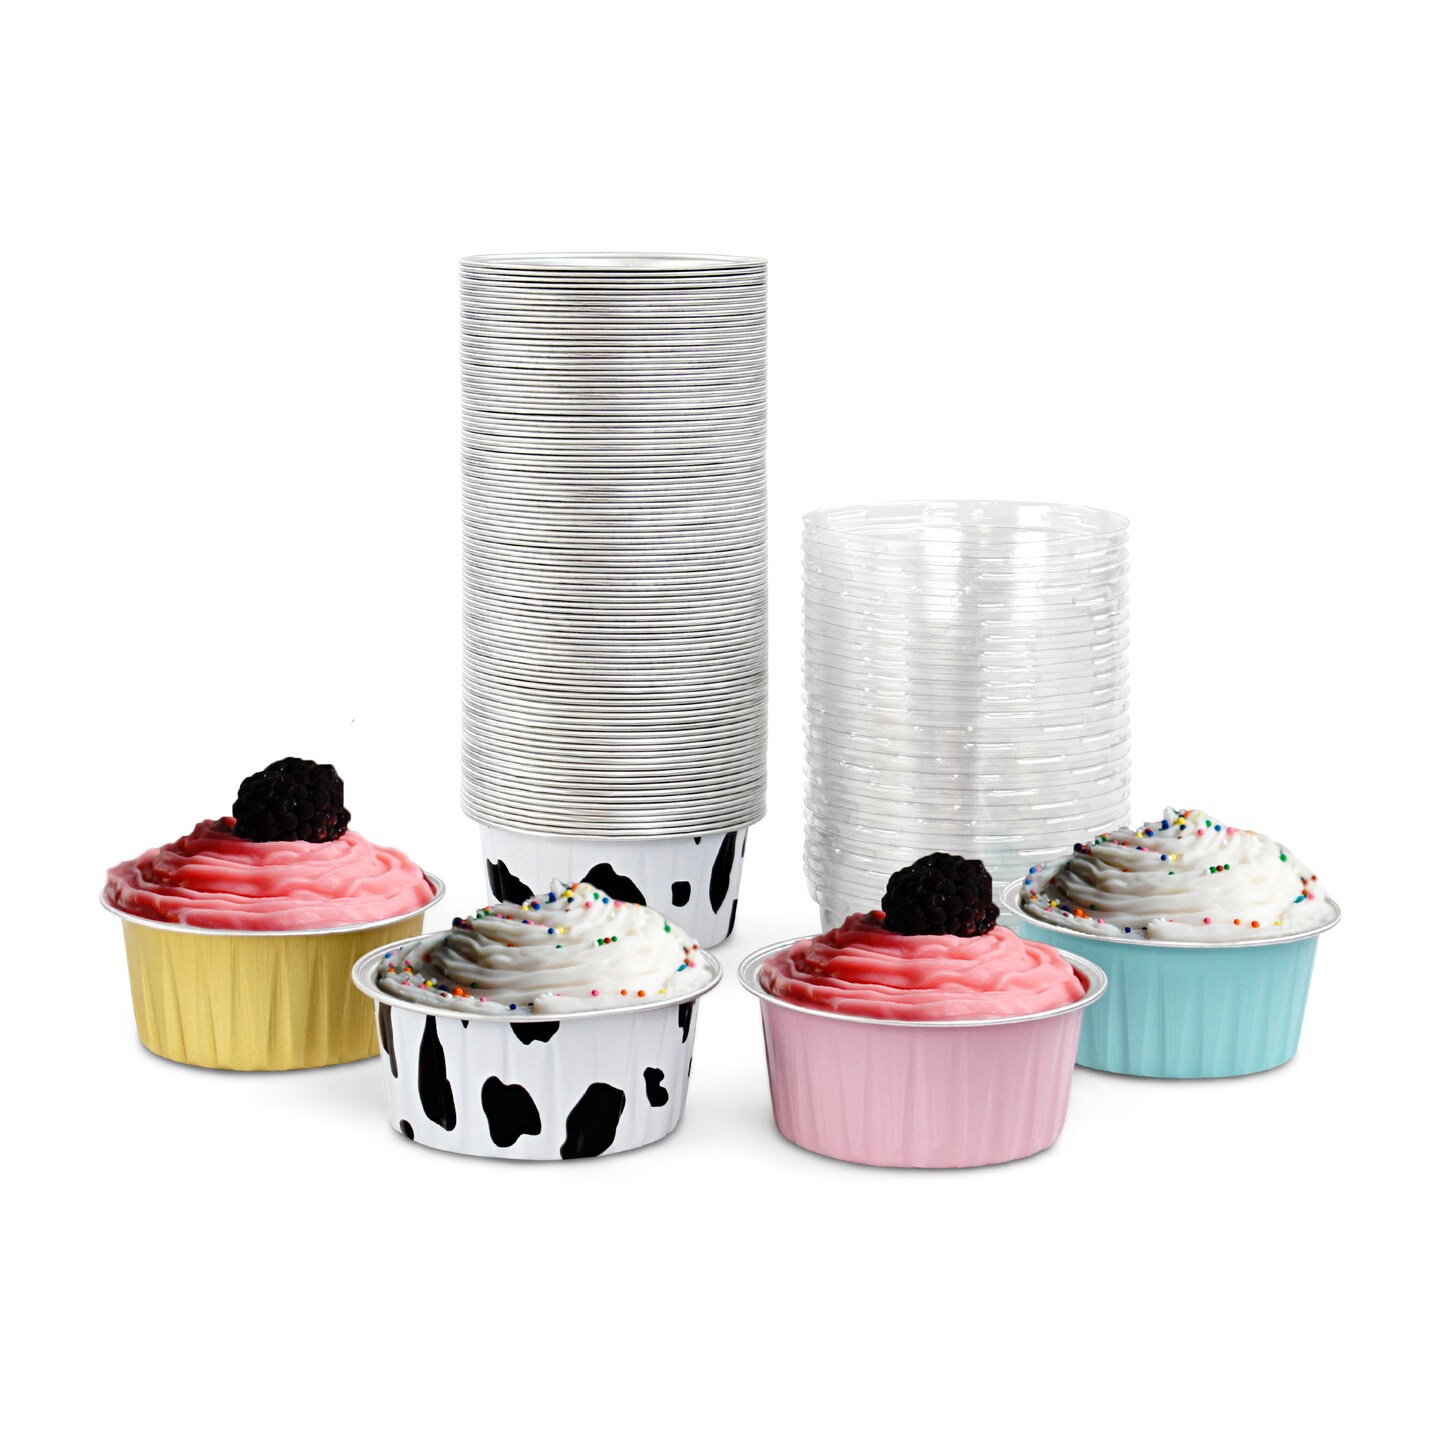 Spec101 Aluminum Foil Mini Cake Pans with Lids - 100pk 5oz 4 Color Muffin Tins